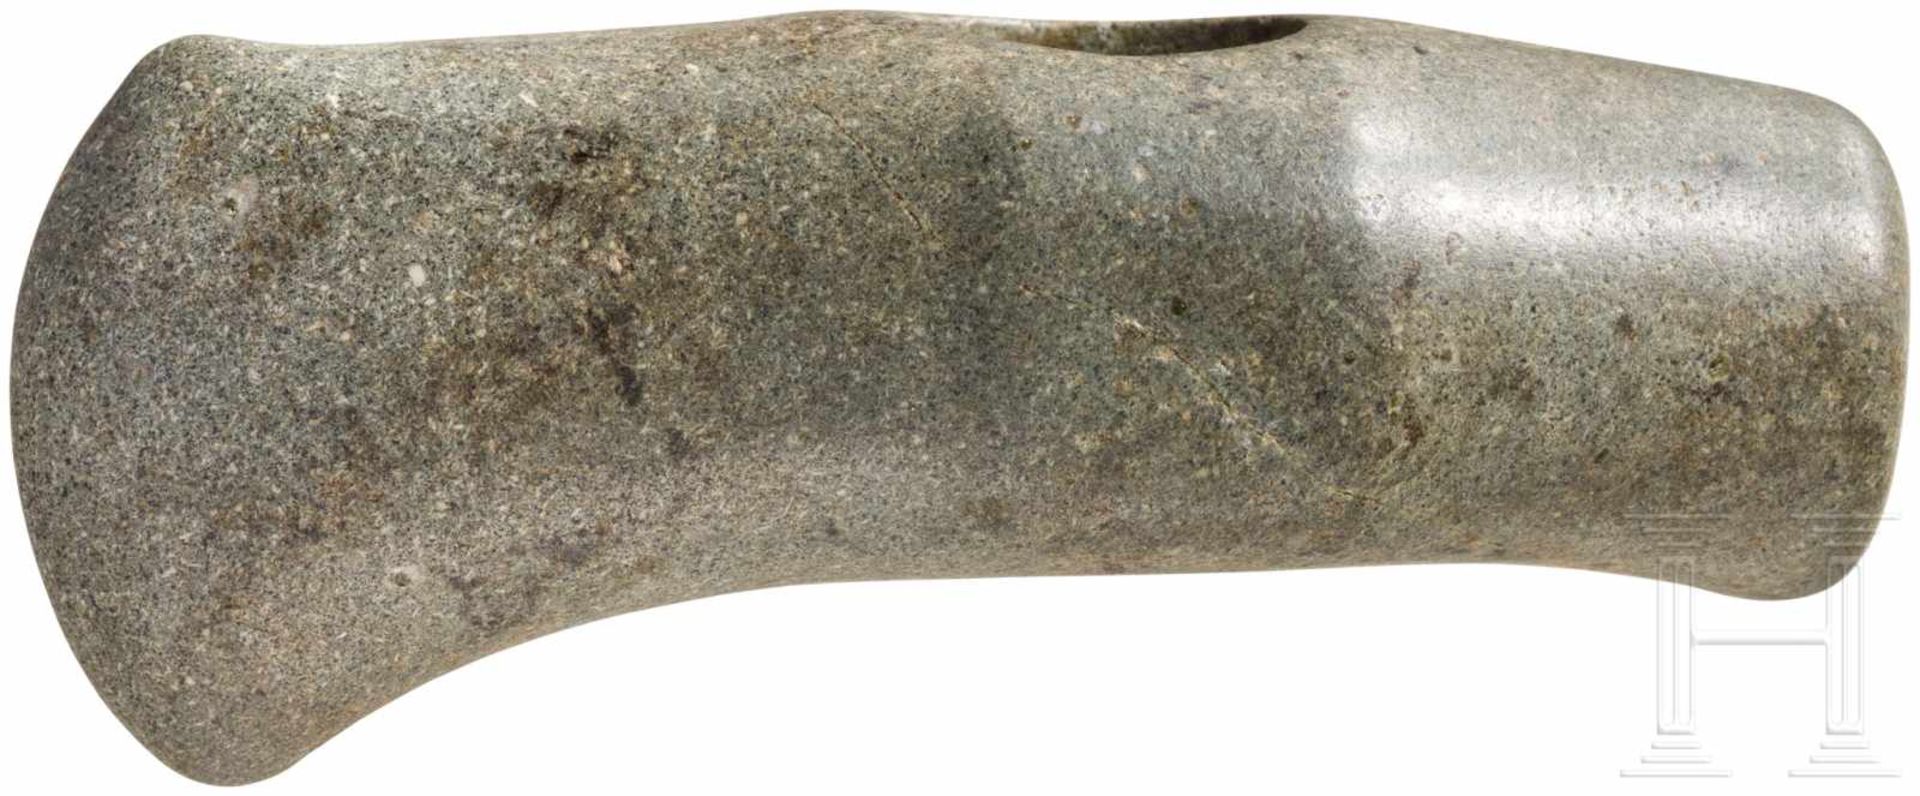 Hammeraxt, Endneolithikum, 2800 - 2500 v. Chr.Kurze Axt aus hellgrauem Felsgestein. Runder Nacken. - Bild 2 aus 2